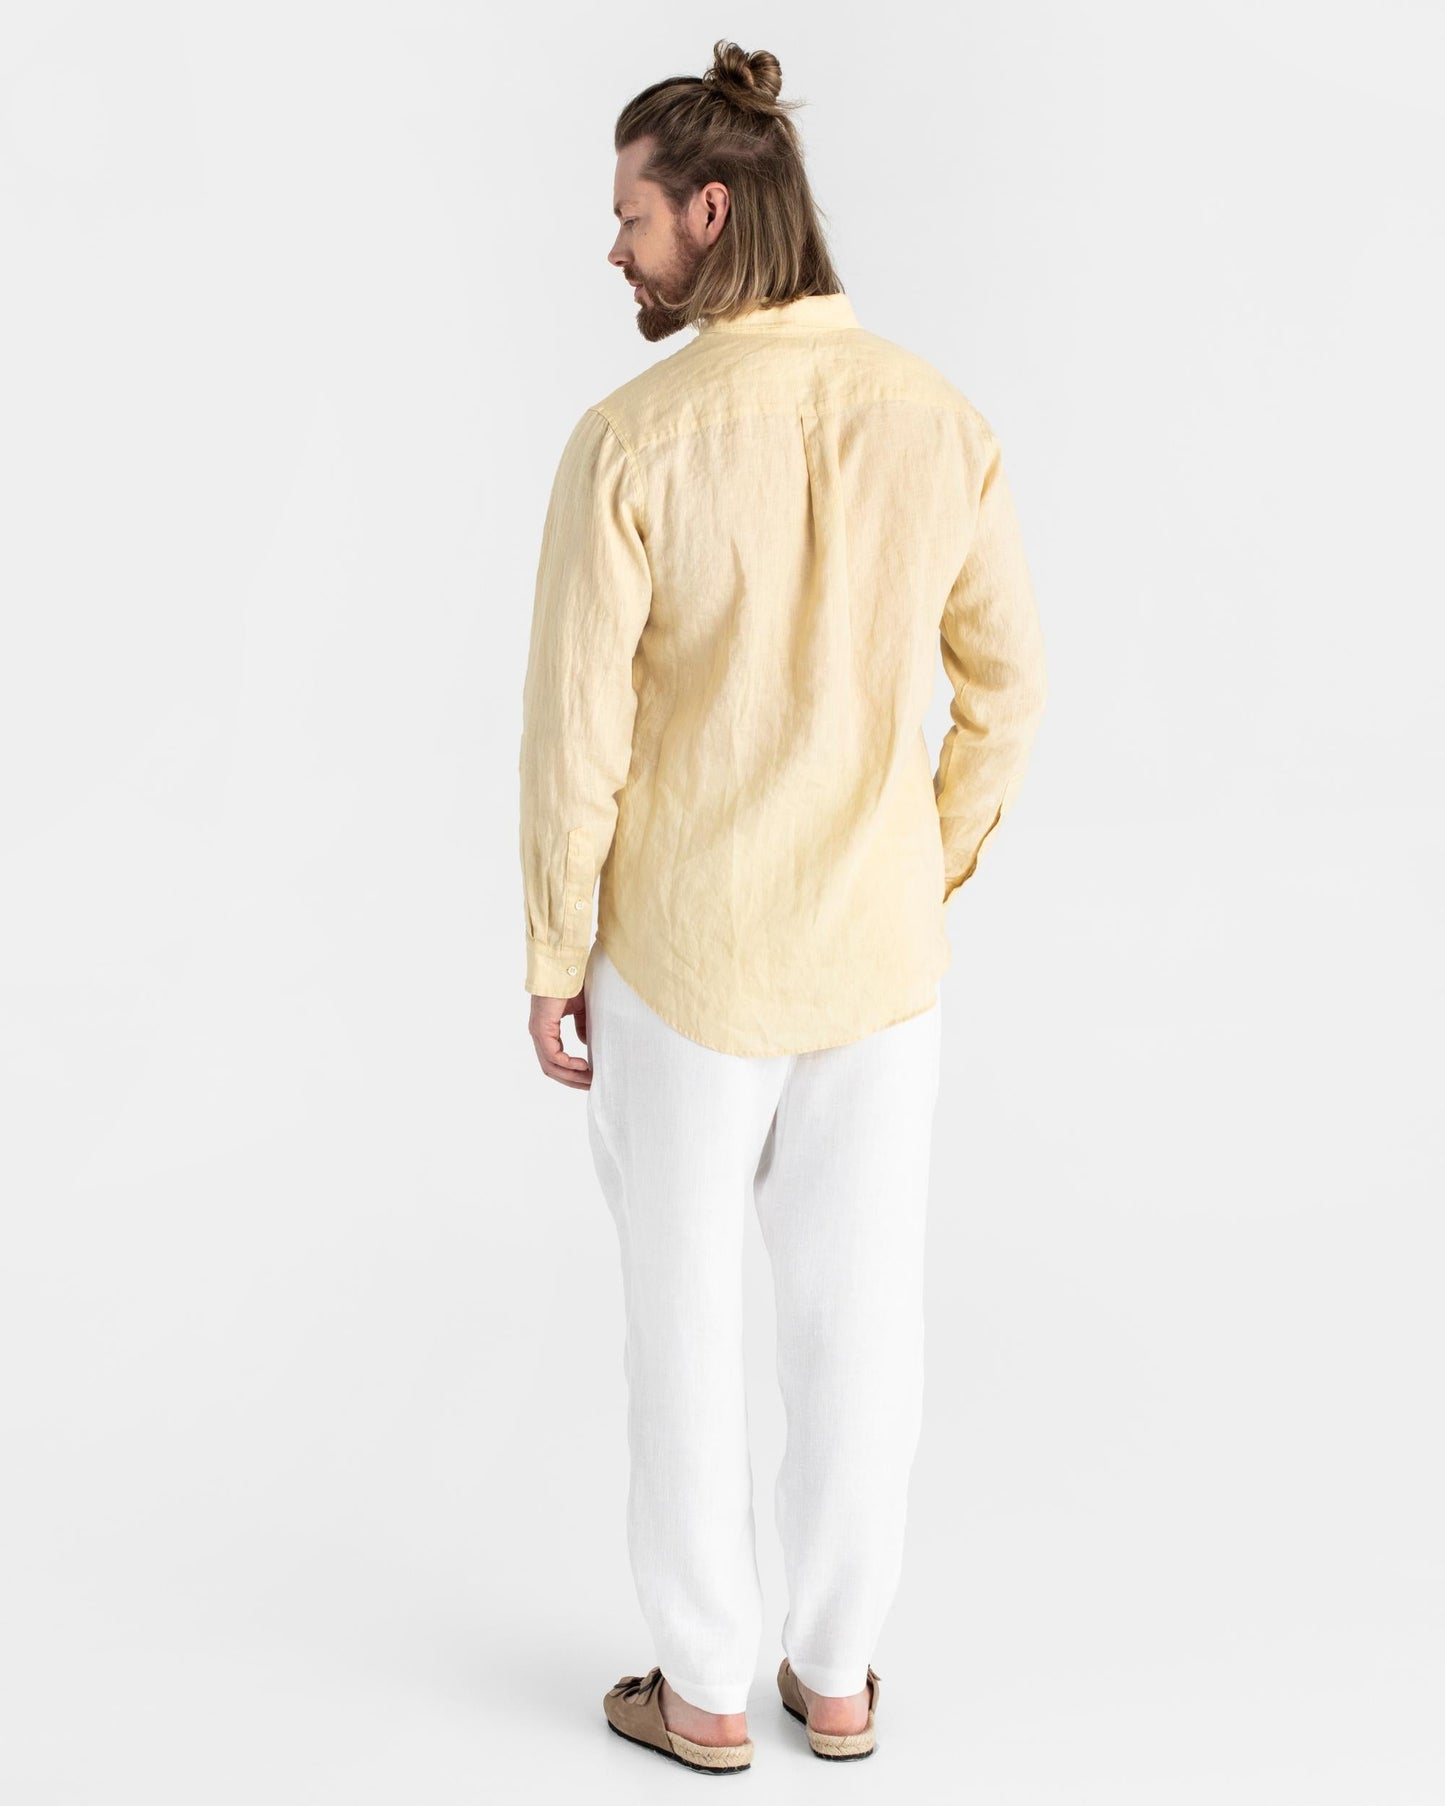 Men's classic linen shirt WENGEN in Cream - MagicLinen